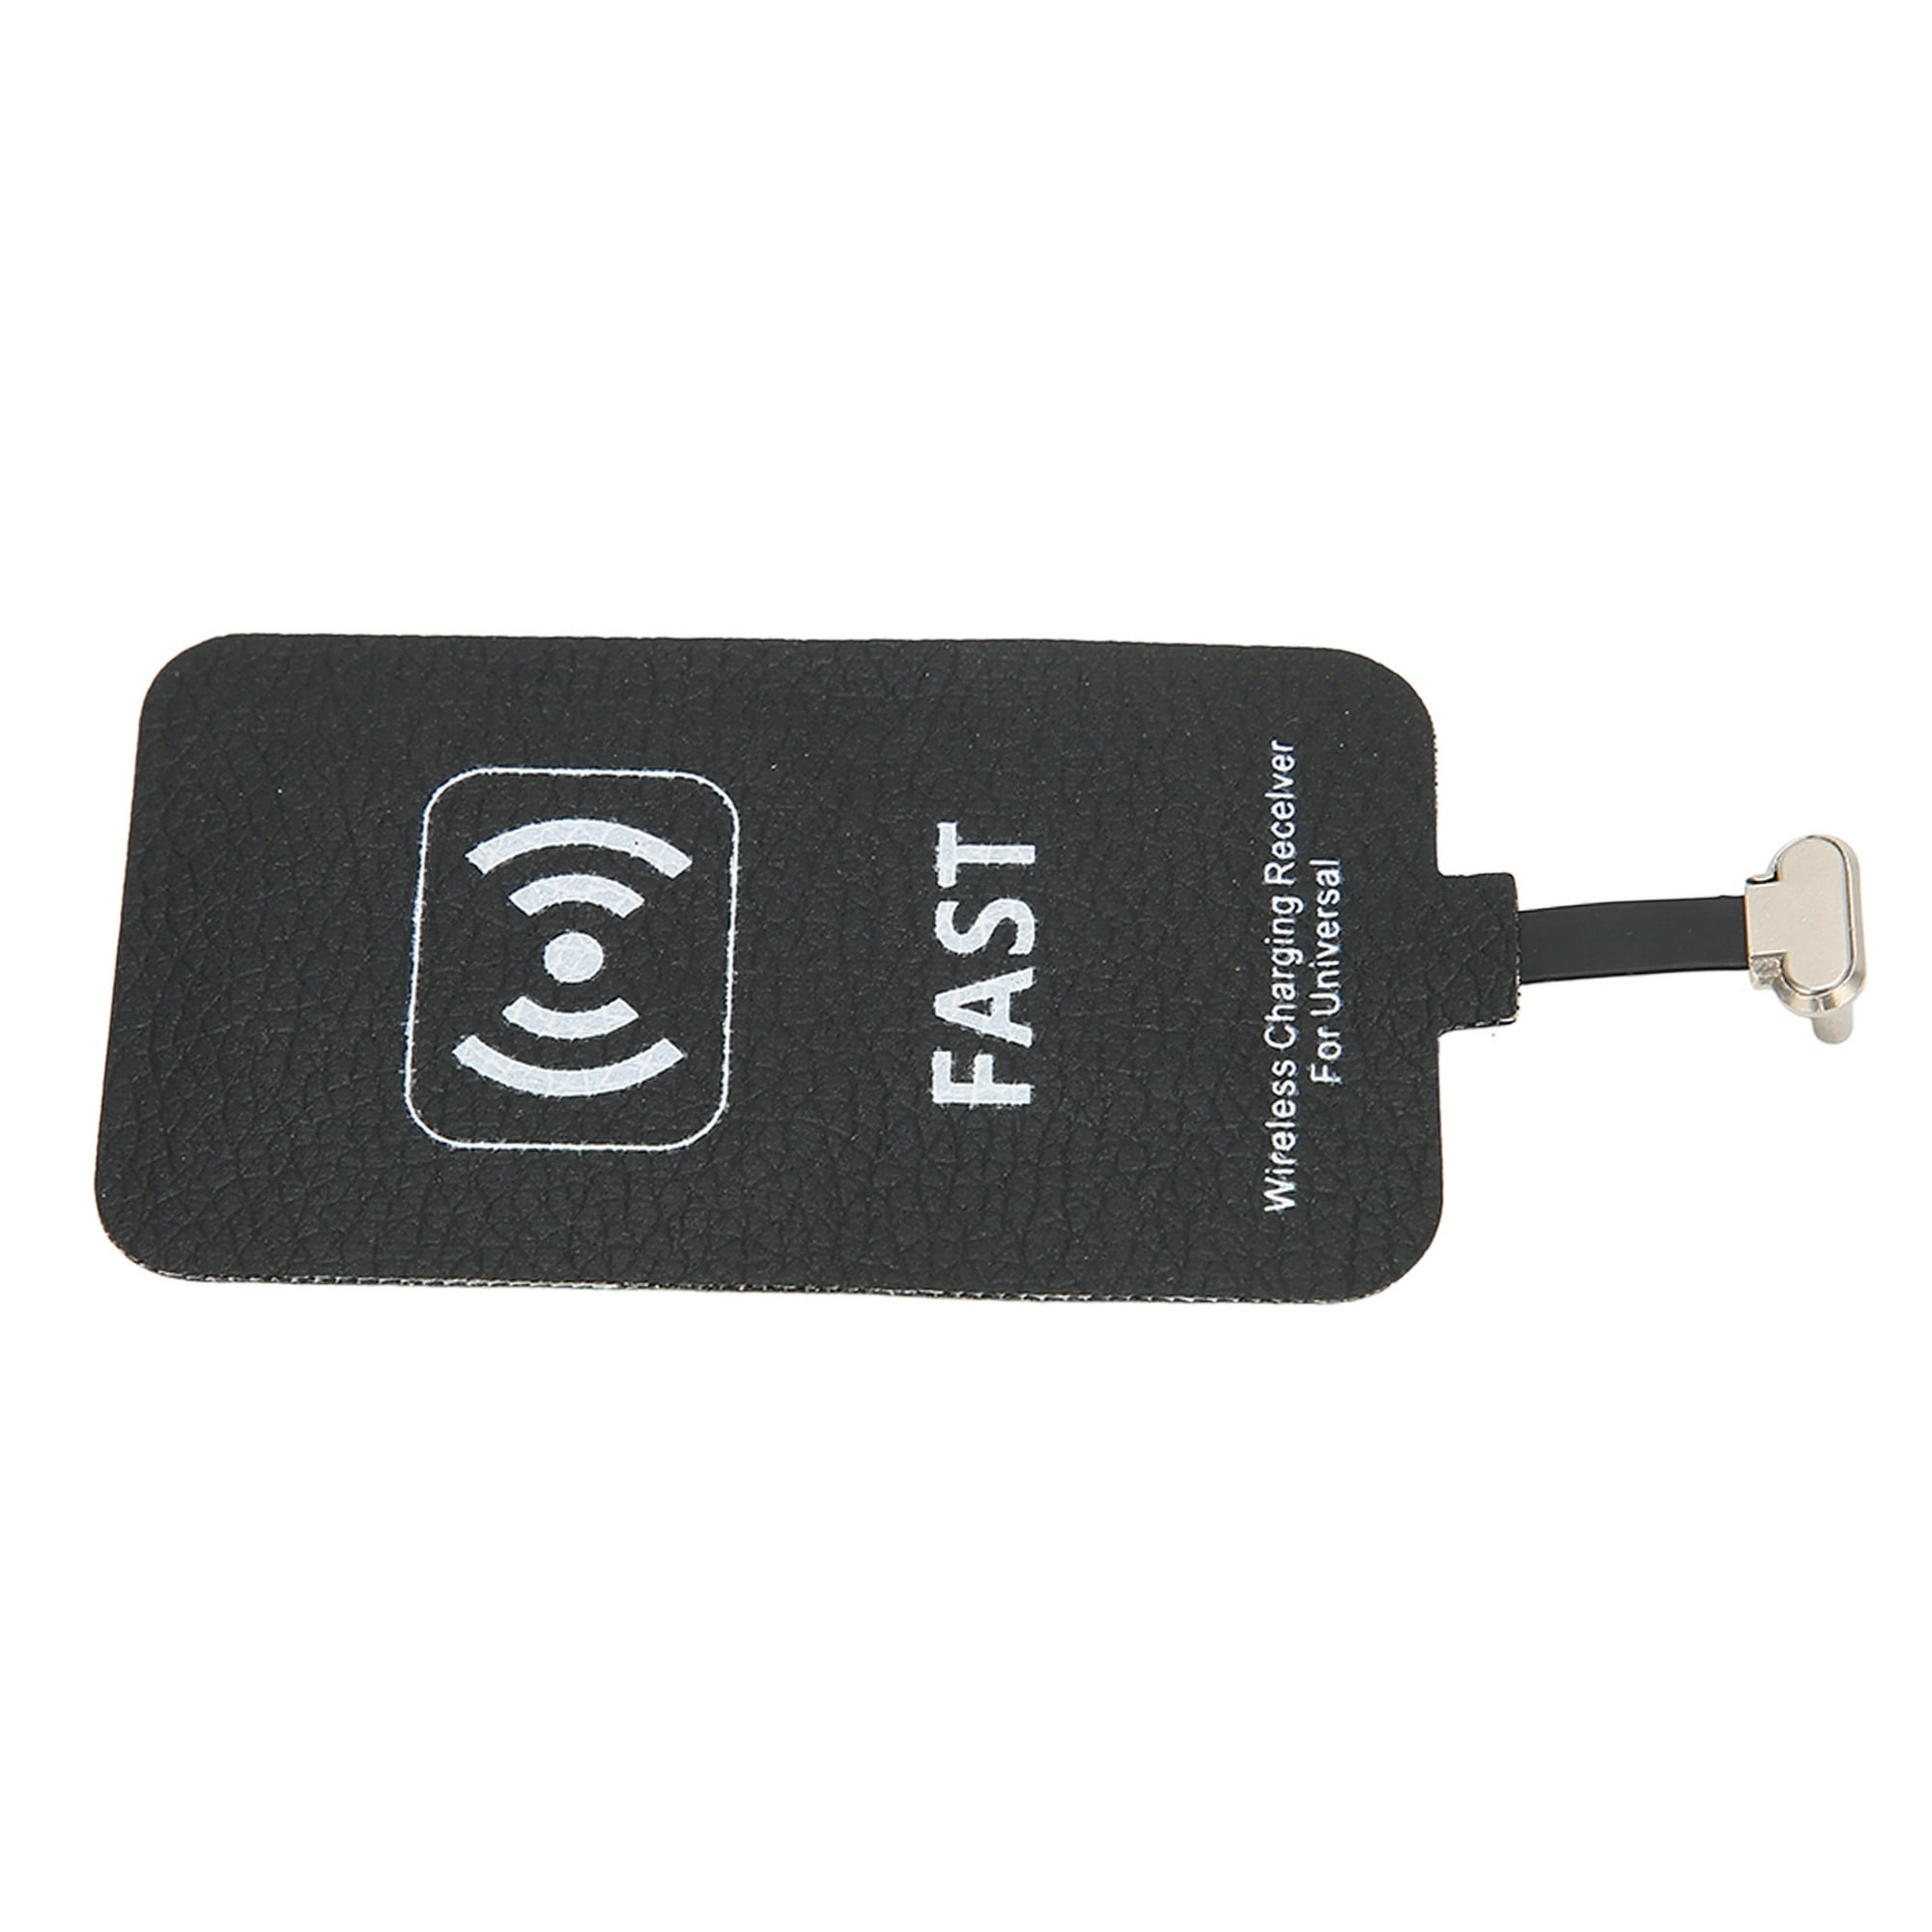 Receptor de carga inalámbrico tipo C, receptor Qi USB C, chip receptor de  carga rápida Qi de 10 W para teléfonos celulares tipo C, Plug and Play :  Celulares y Accesorios 